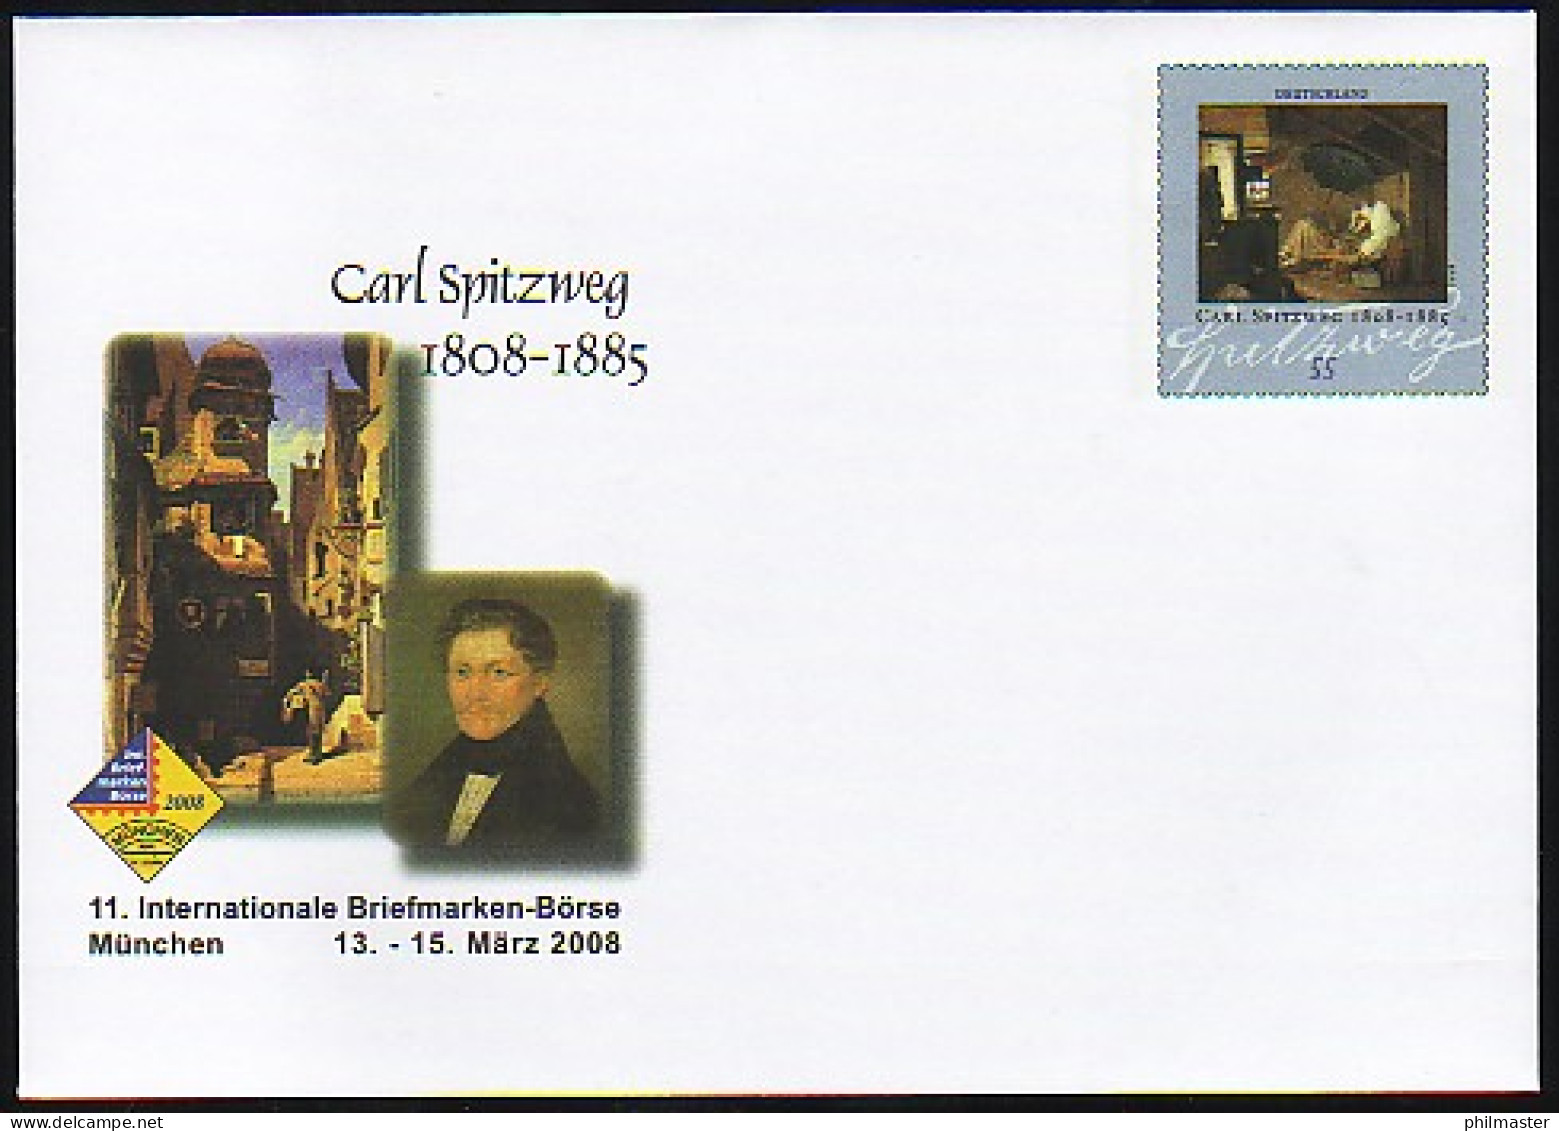 USo 146 Briefmarken-Börse München - Carl Spitzweg 2008, ** - Enveloppes - Neuves